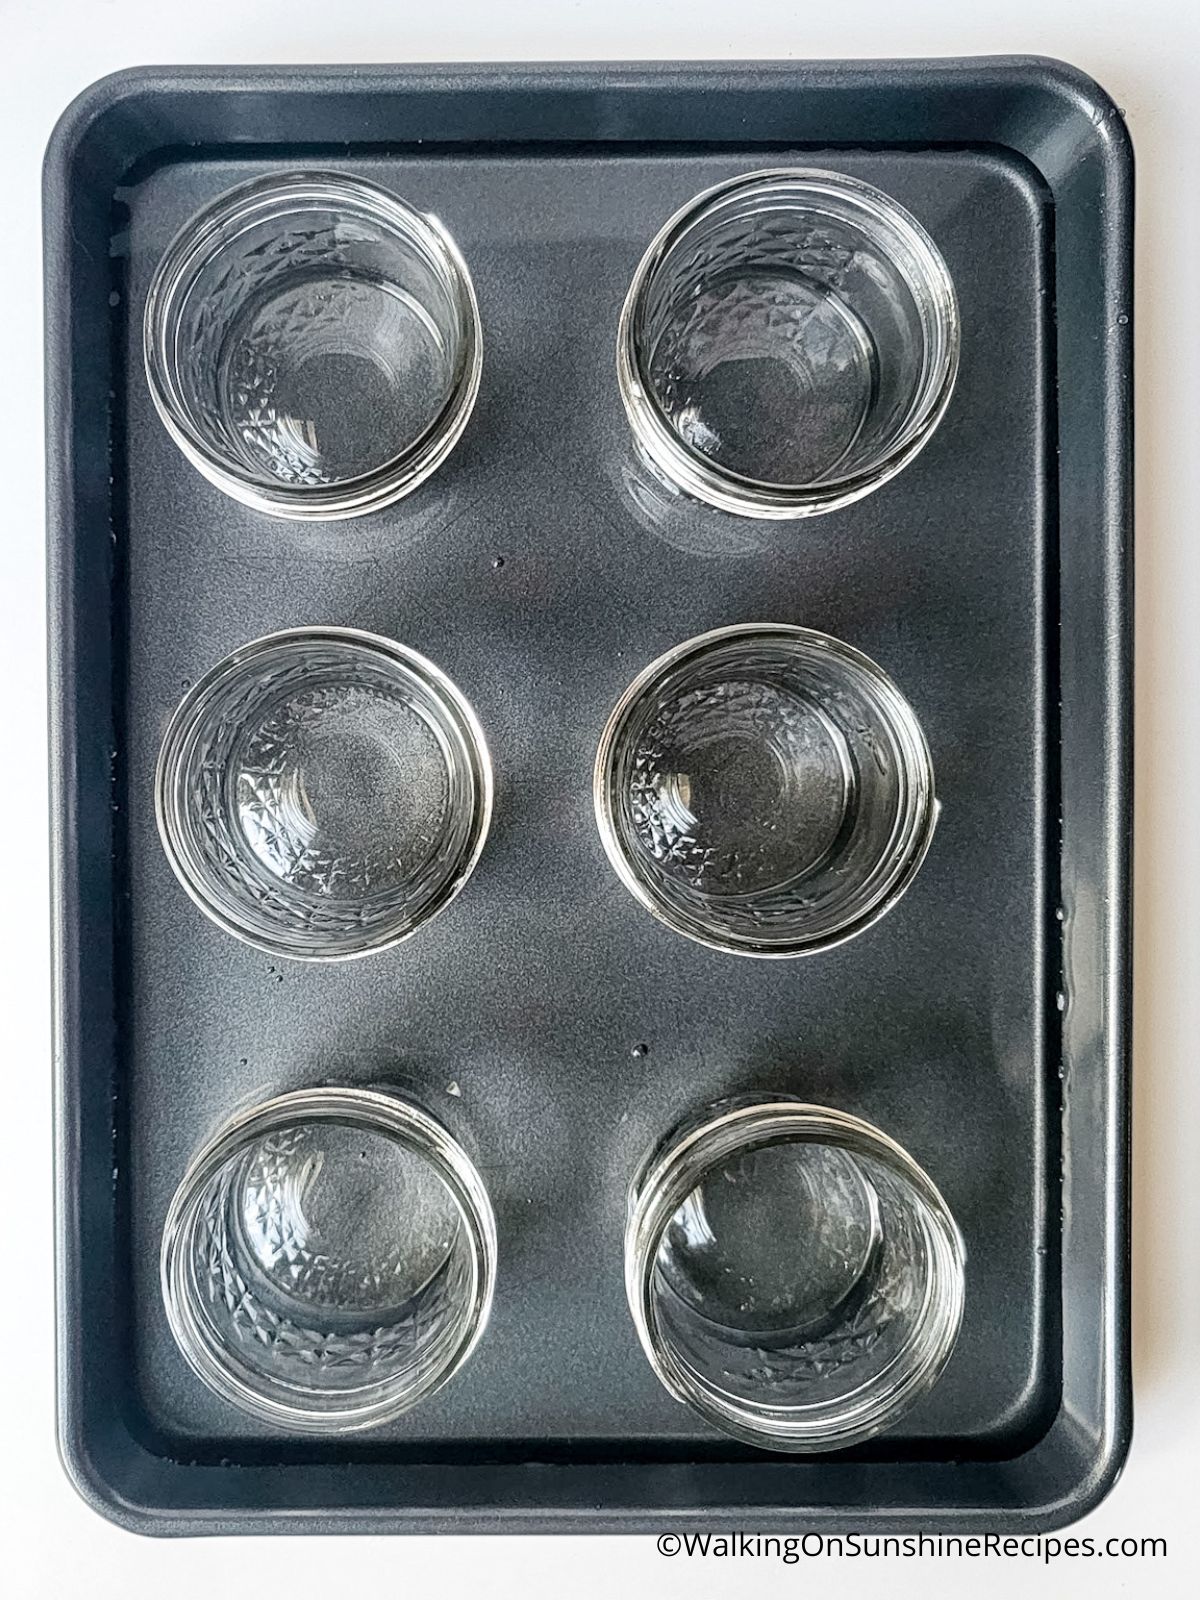 Mason jars in baking pan.